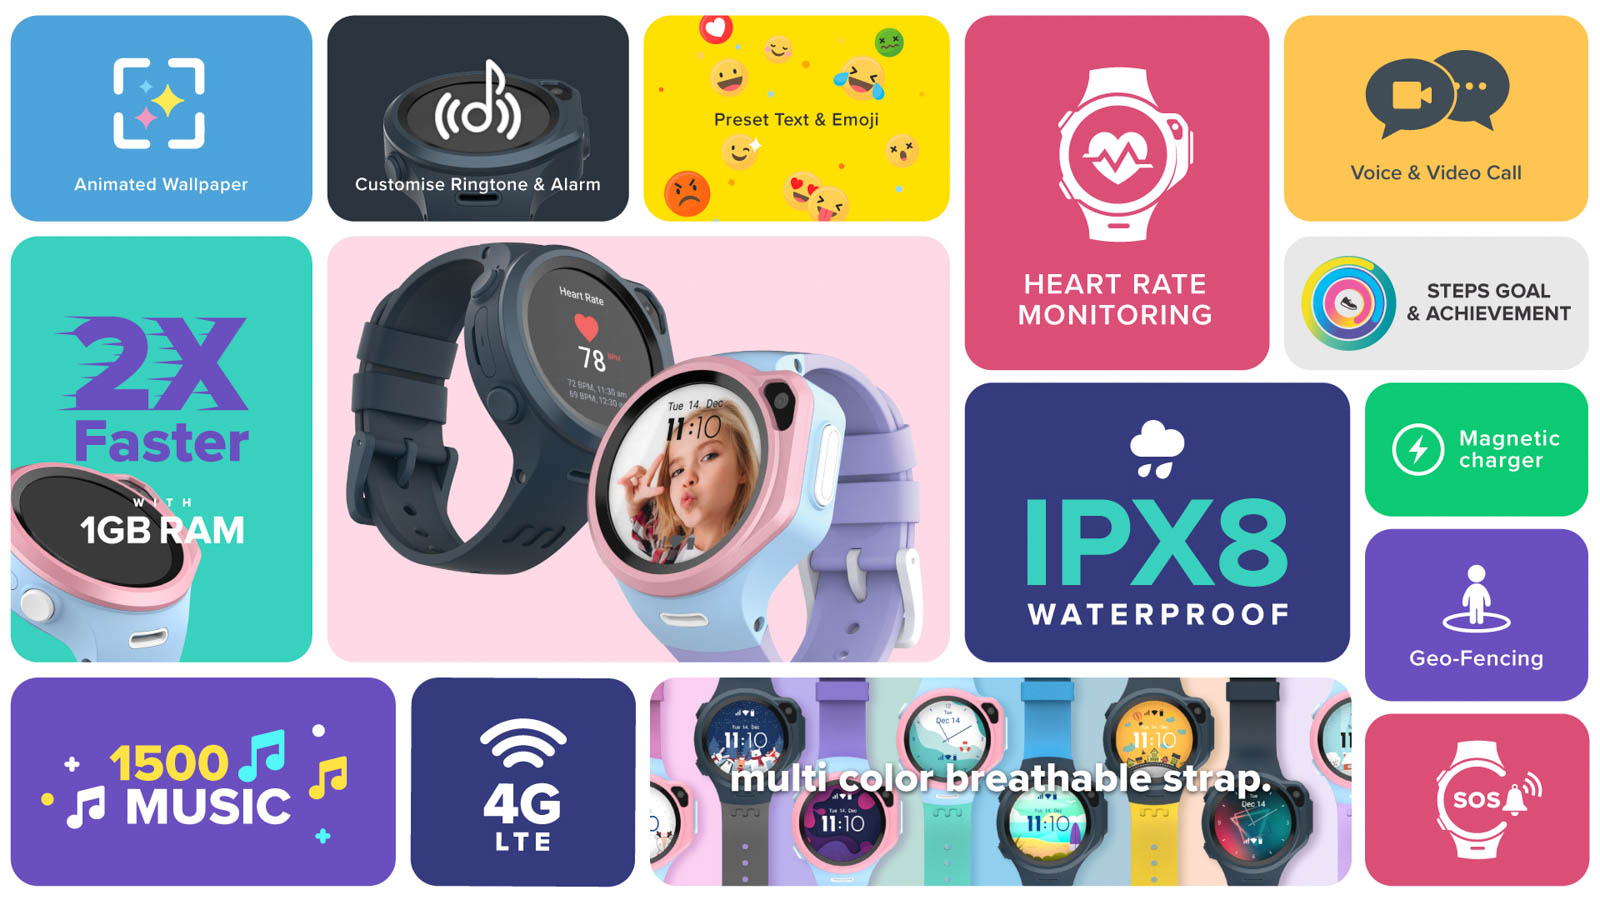 Đồng hồ thông minh myFirst Fone R1s ra mắt - Giải pháp an toàn và tiết kiệm thay thế điện thoại thông minh dành cho trẻ nhỏ